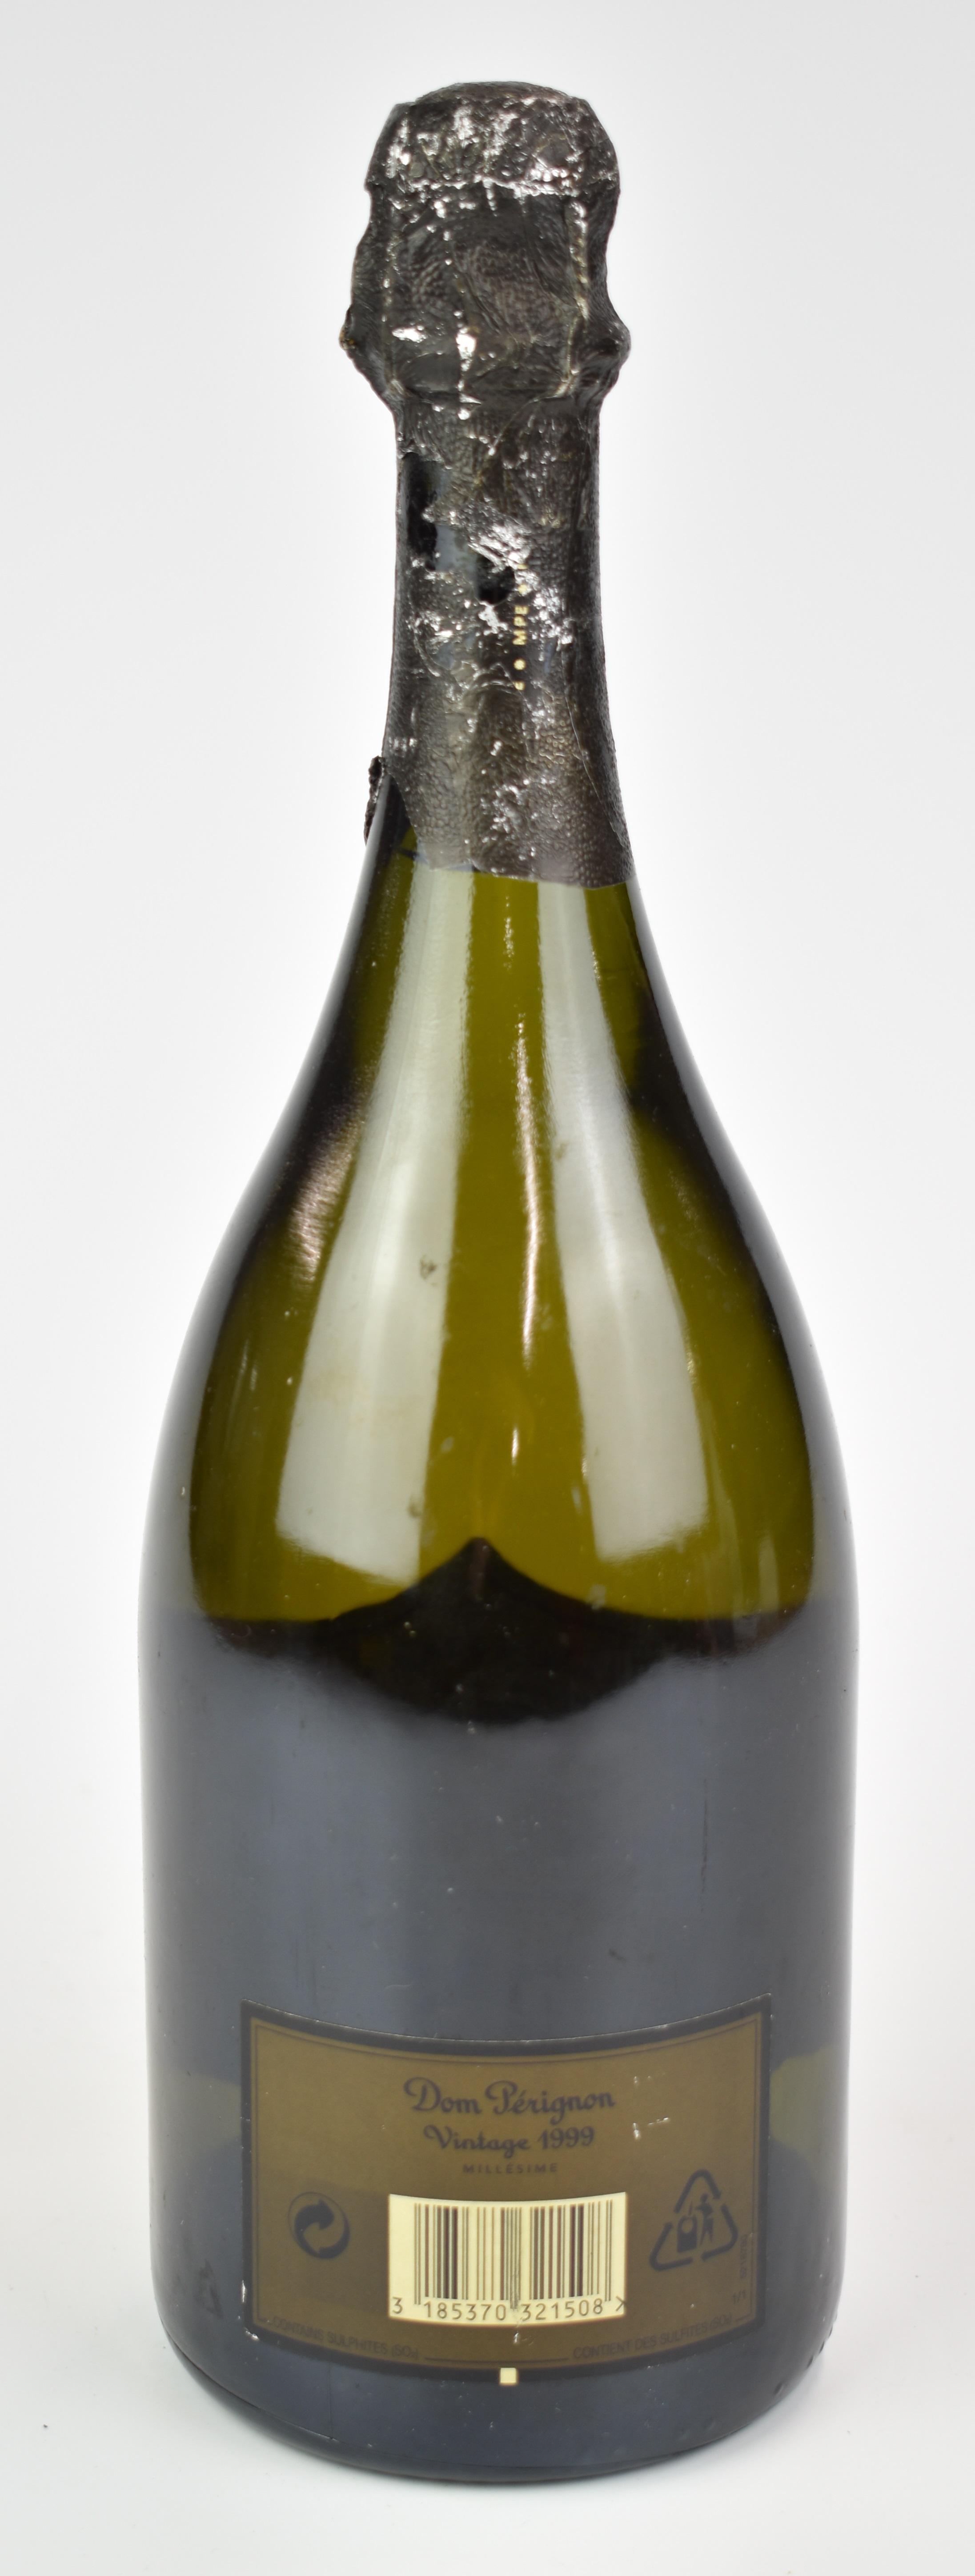 Moët et Chandon Dom Pérignon Vintage 1999 Champagne, 750ml, 12.5% vol - Image 3 of 3